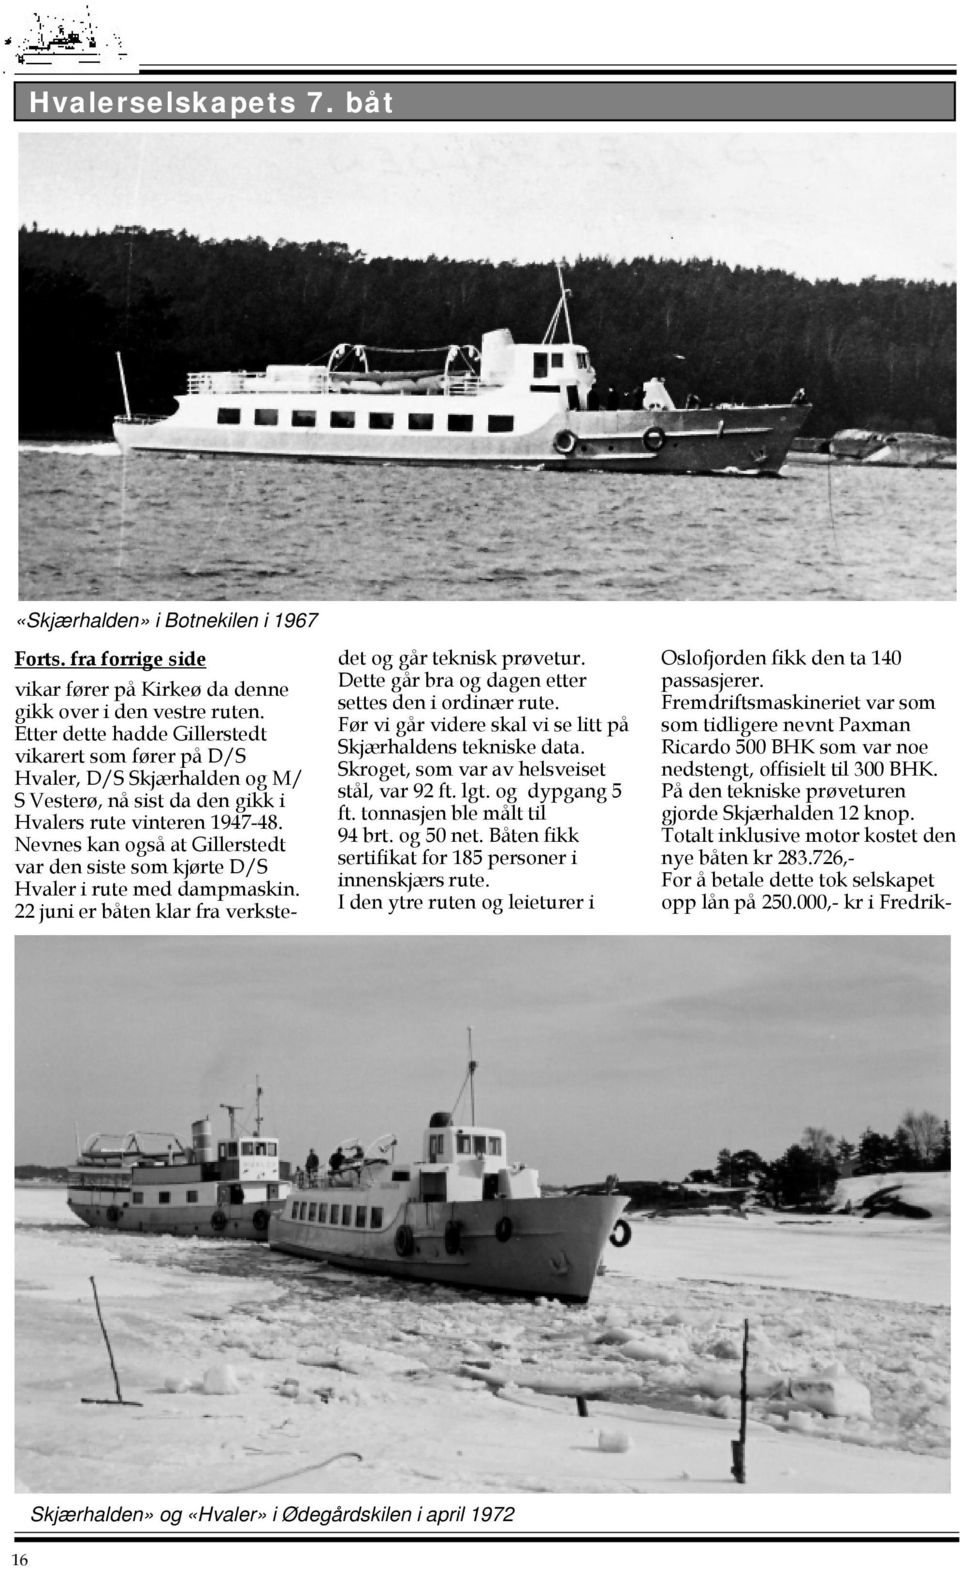 Nevnes kan også at Gillerstedt var den siste som kjørte D/S Hvaler i rute med dampmaskin. 22 juni er båten klar fra verkstedet og går teknisk prøvetur.